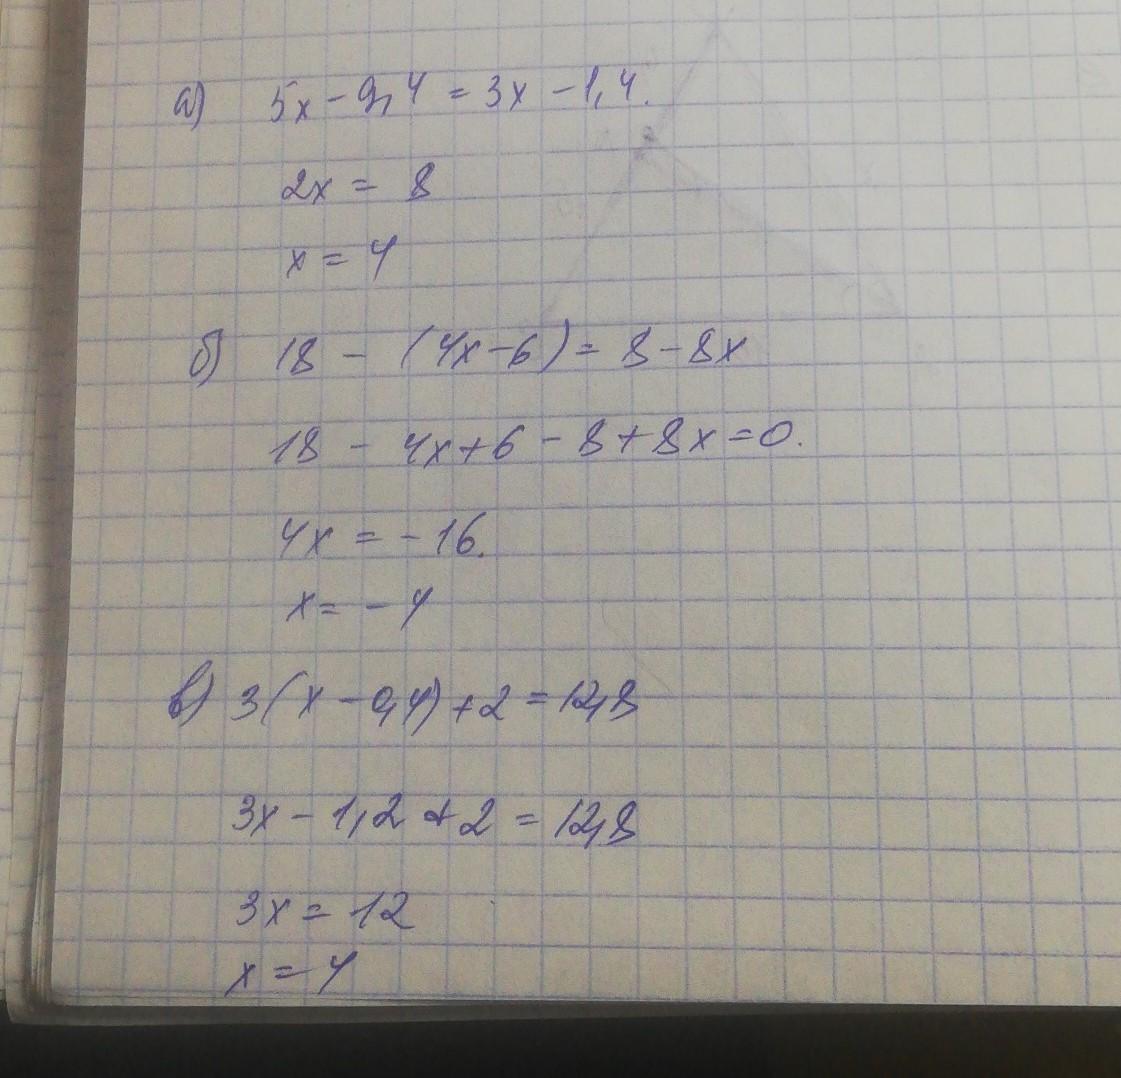 3 9 8 9x 4x 8. X2+5x−165=0. 12/X+8=5. 8х-52=532. Уравнение a+12/5=10.